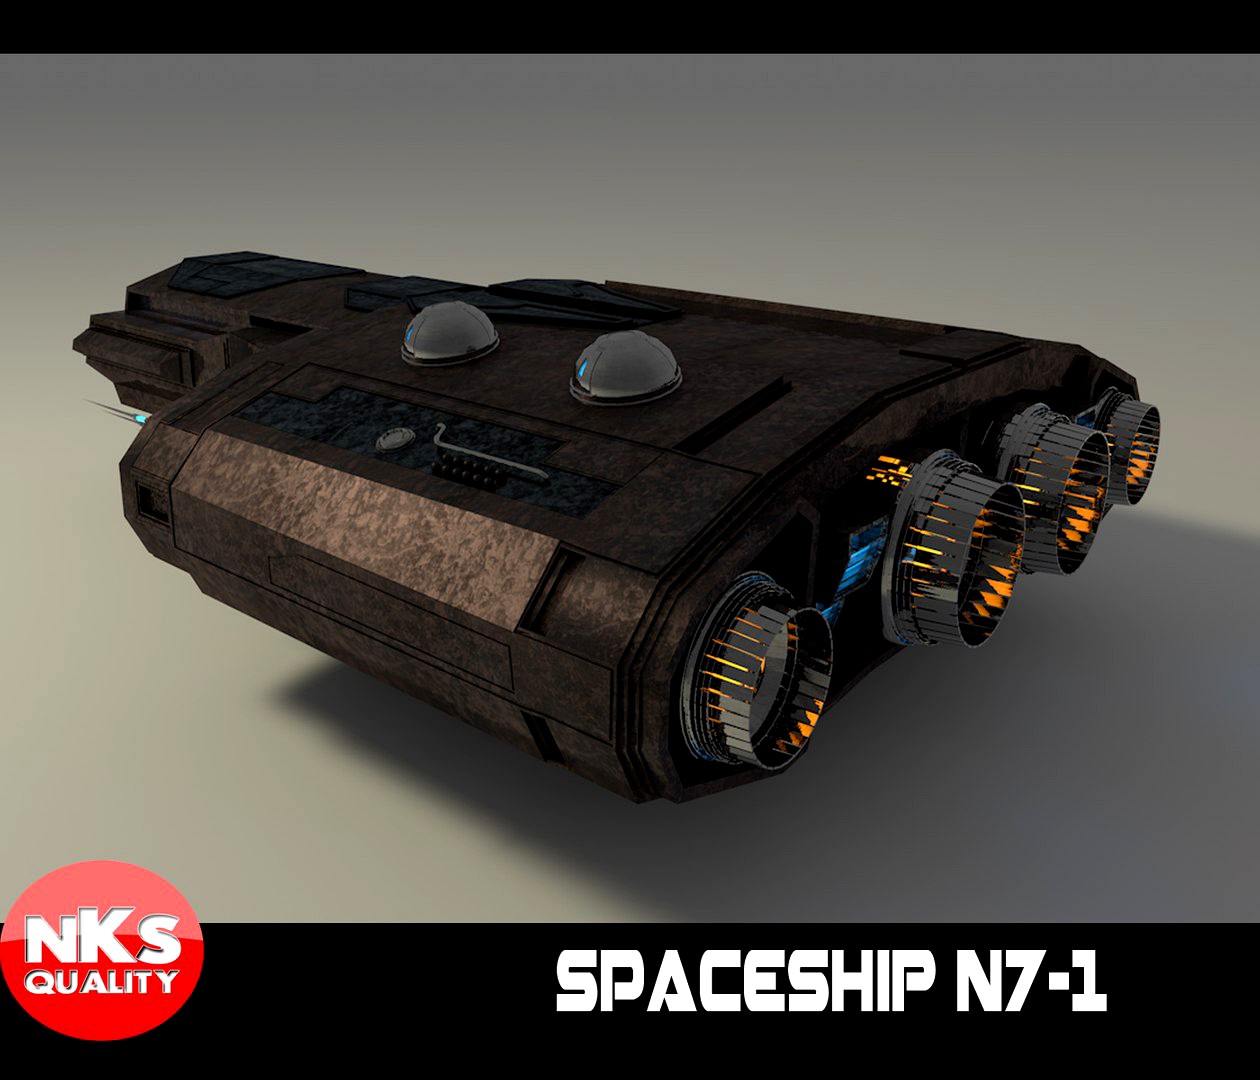 Spaceship N7-1